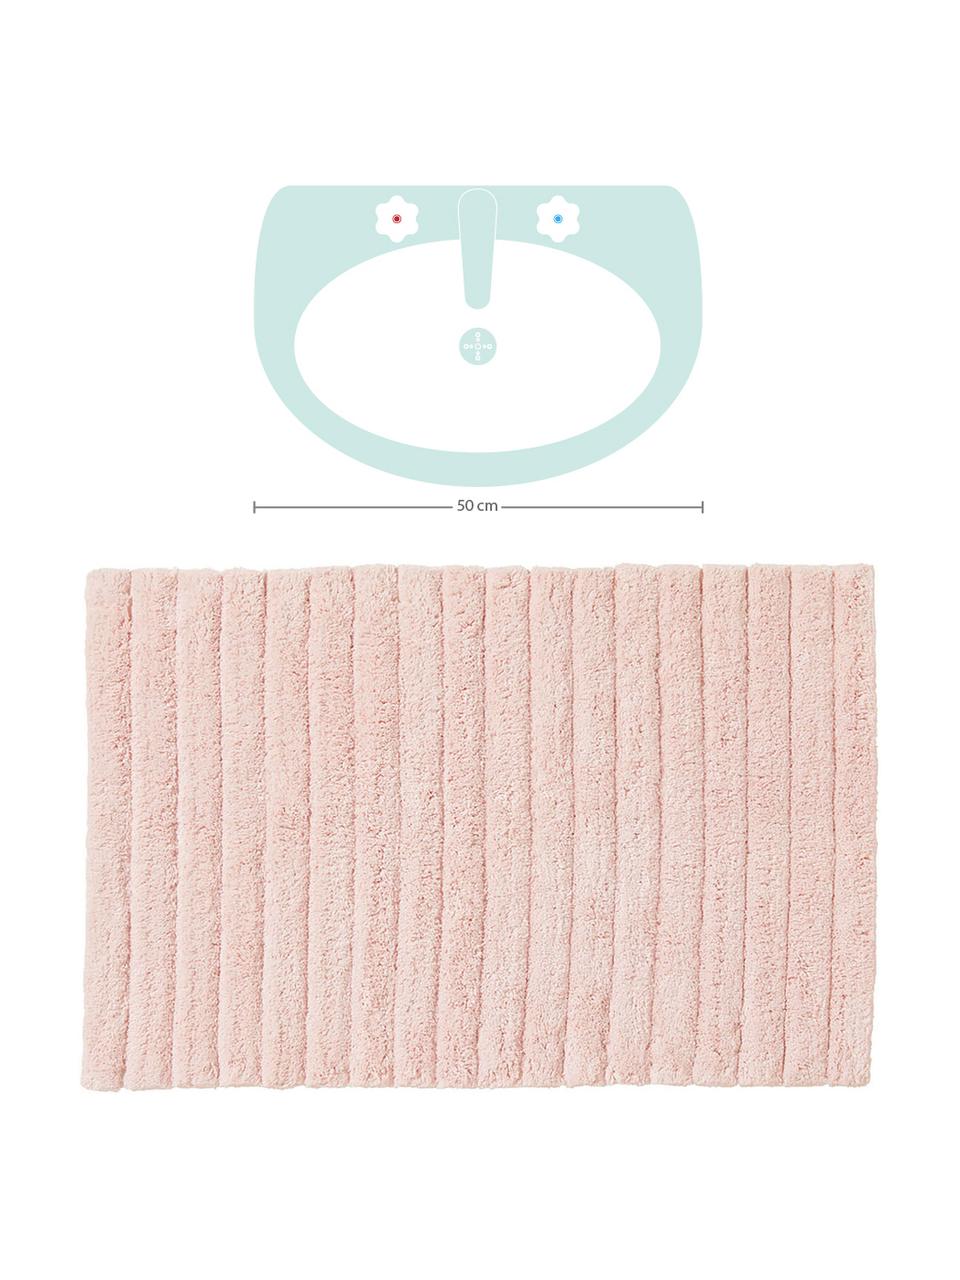 Tapis de bain moelleux rose Board, Coton,
qualité supérieure, 1900 g/m², Rose, larg. 60 x long. 90 cm